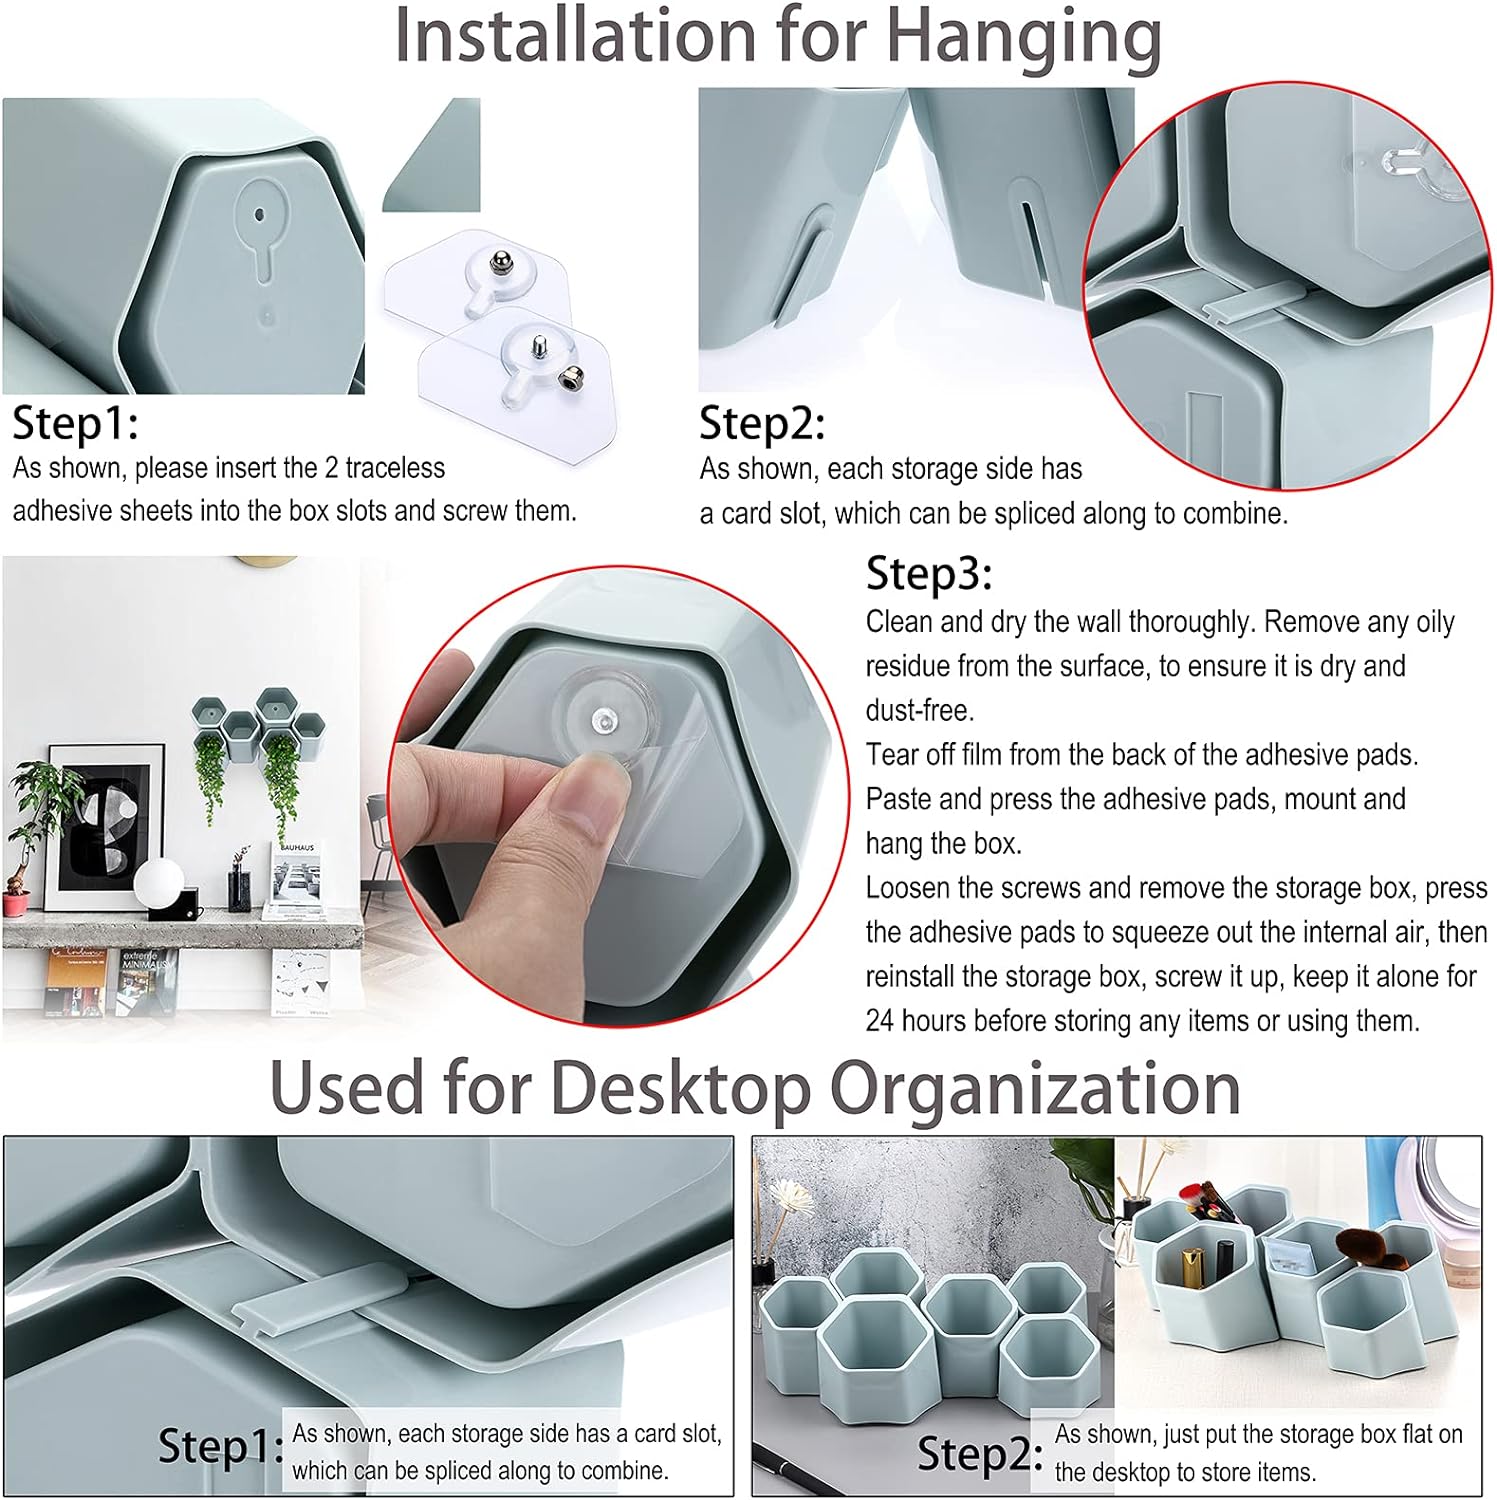 Hexagonal Creative Pen Holder Desktop Wall-Mounted